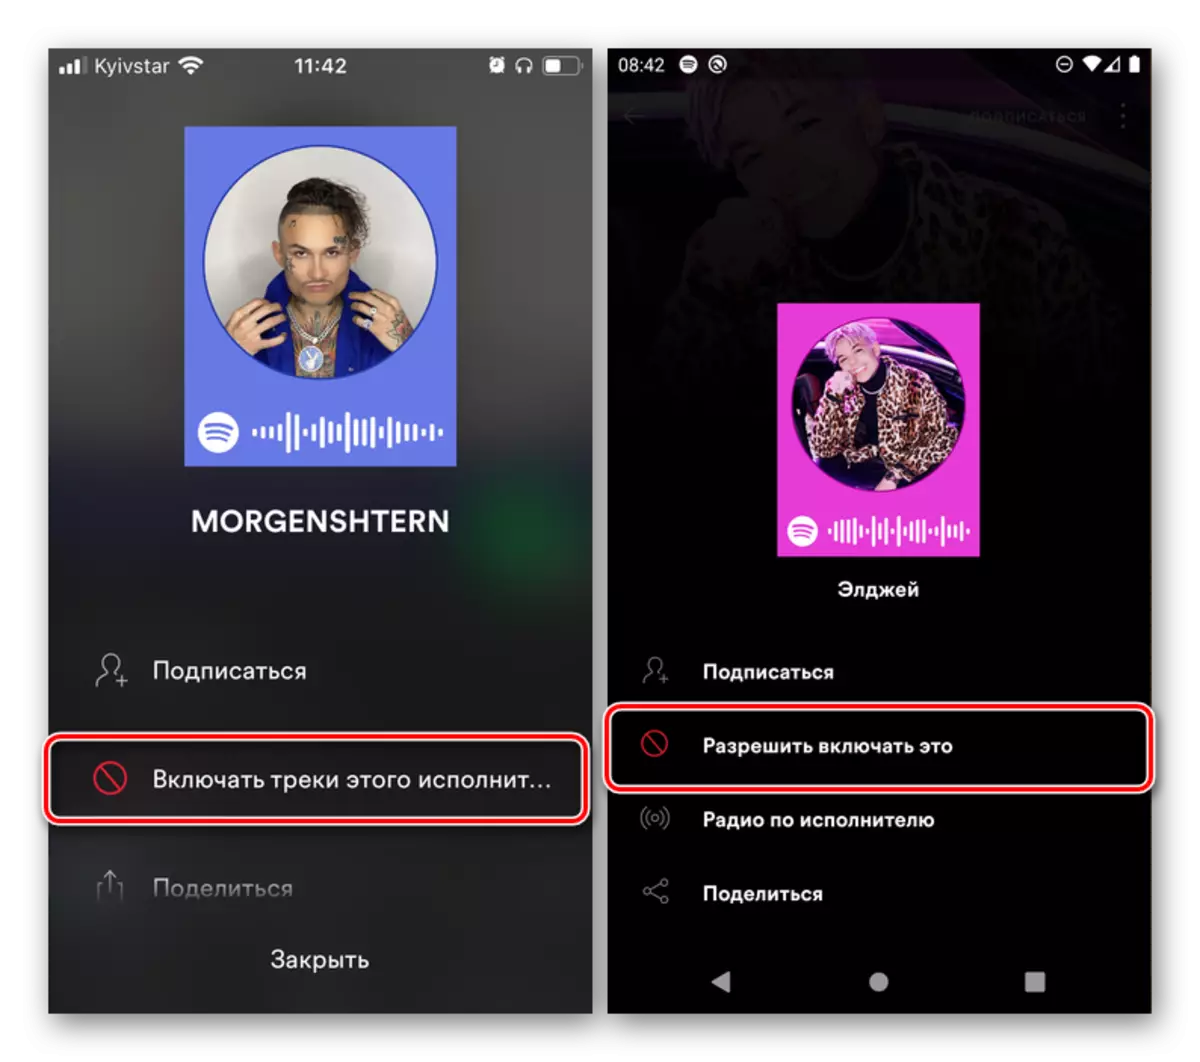 Rezultat blokiranja izvajalca in zmožnosti, da ga odstranite v aplikaciji Spotify za iPhone in Android